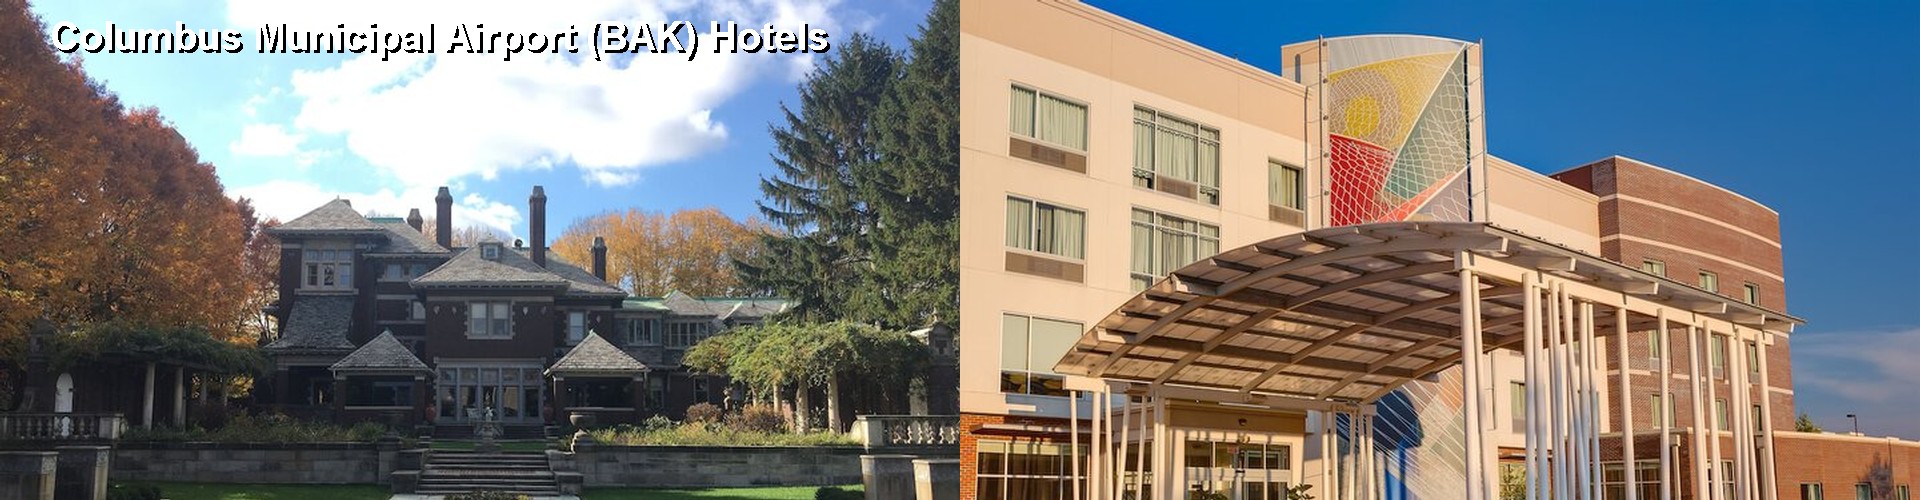 5 Best Hotels near Columbus Municipal Airport (BAK)